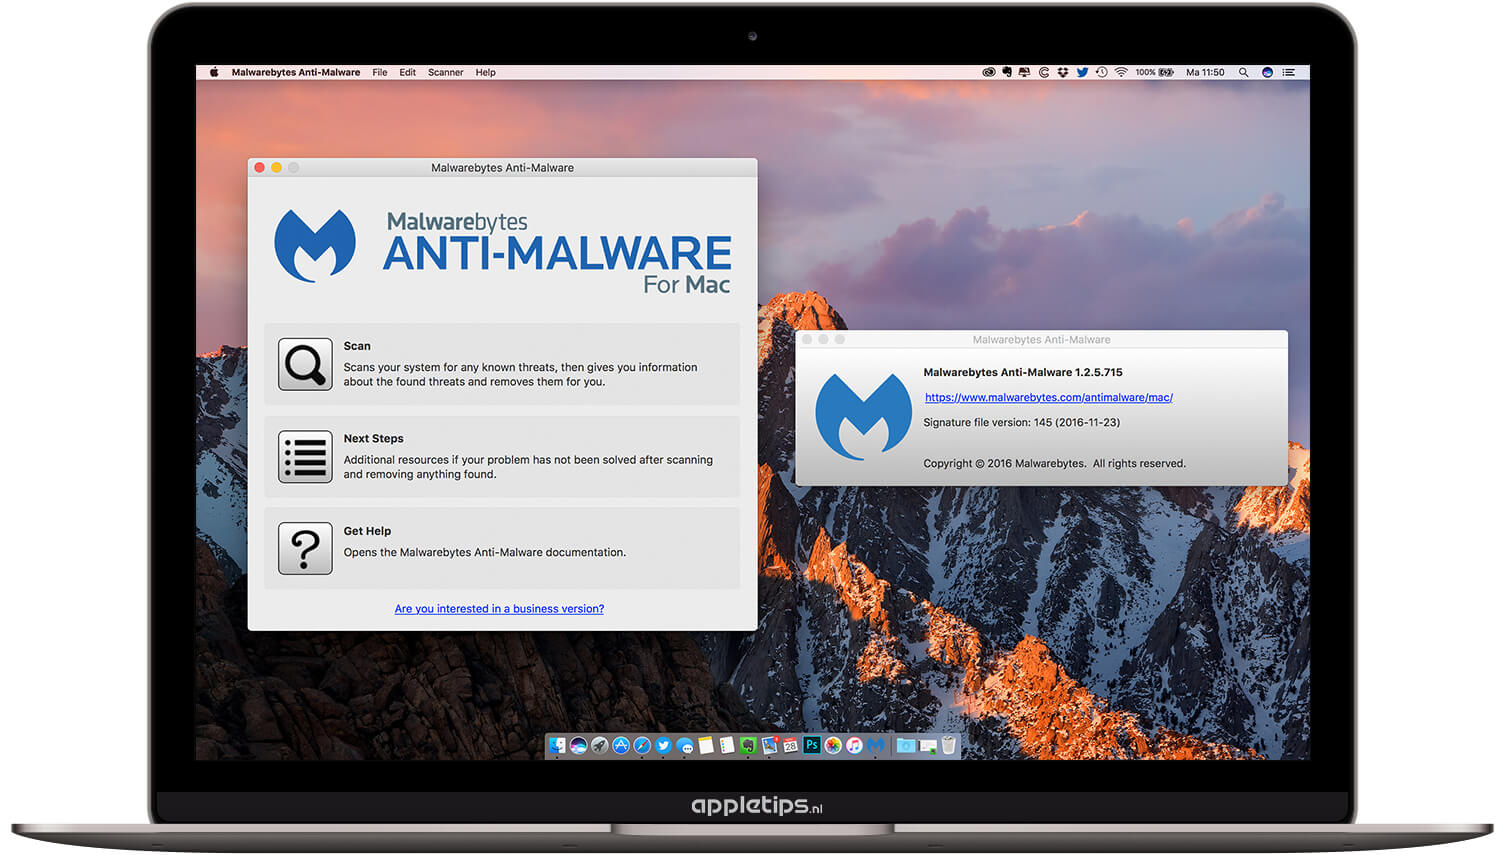 free malware cleaner mac